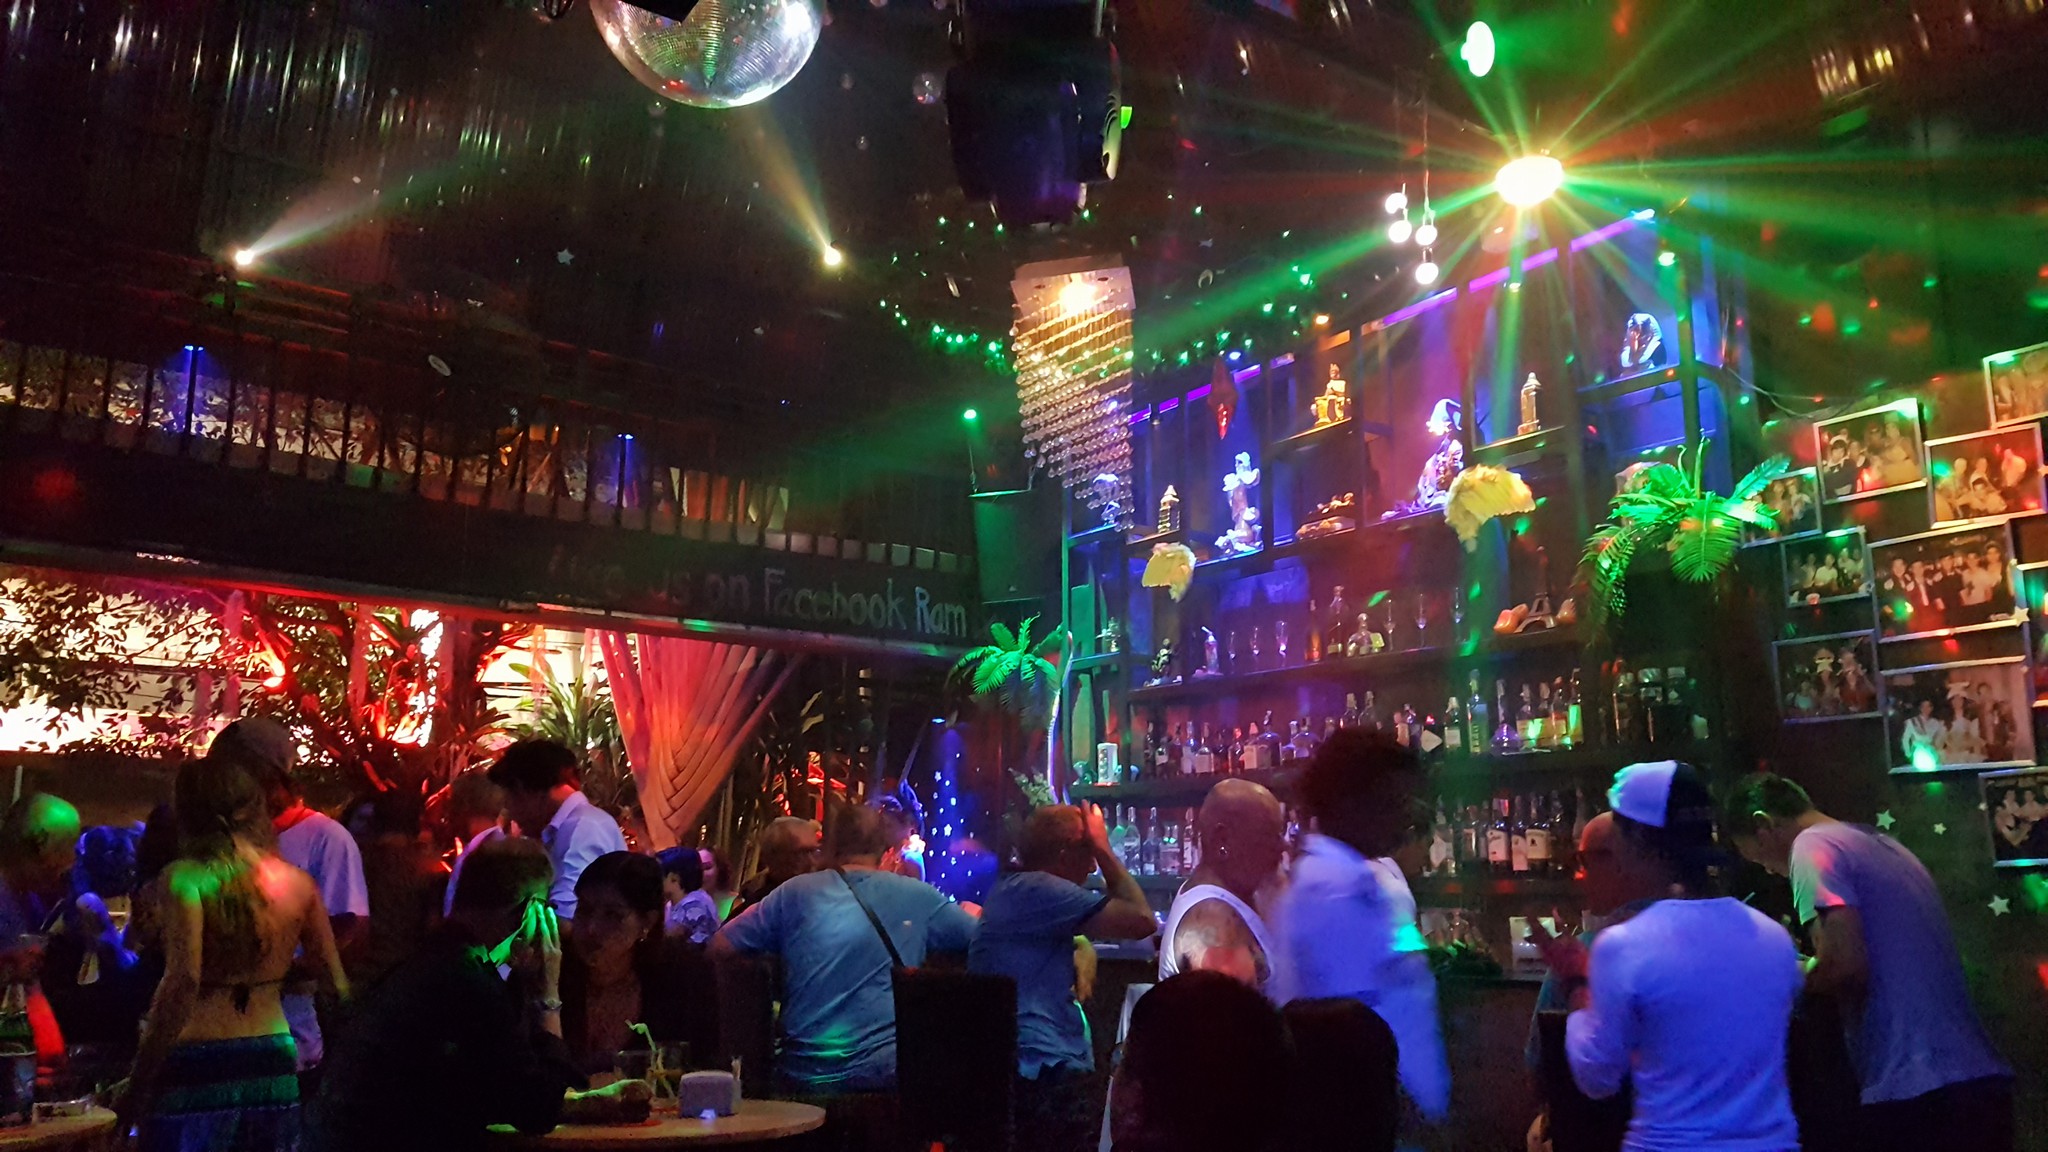 แรม บาร์ เชียงใหม่ (Ram Bar Chiangmai) : เชียงใหม่ (Chiang Mai)